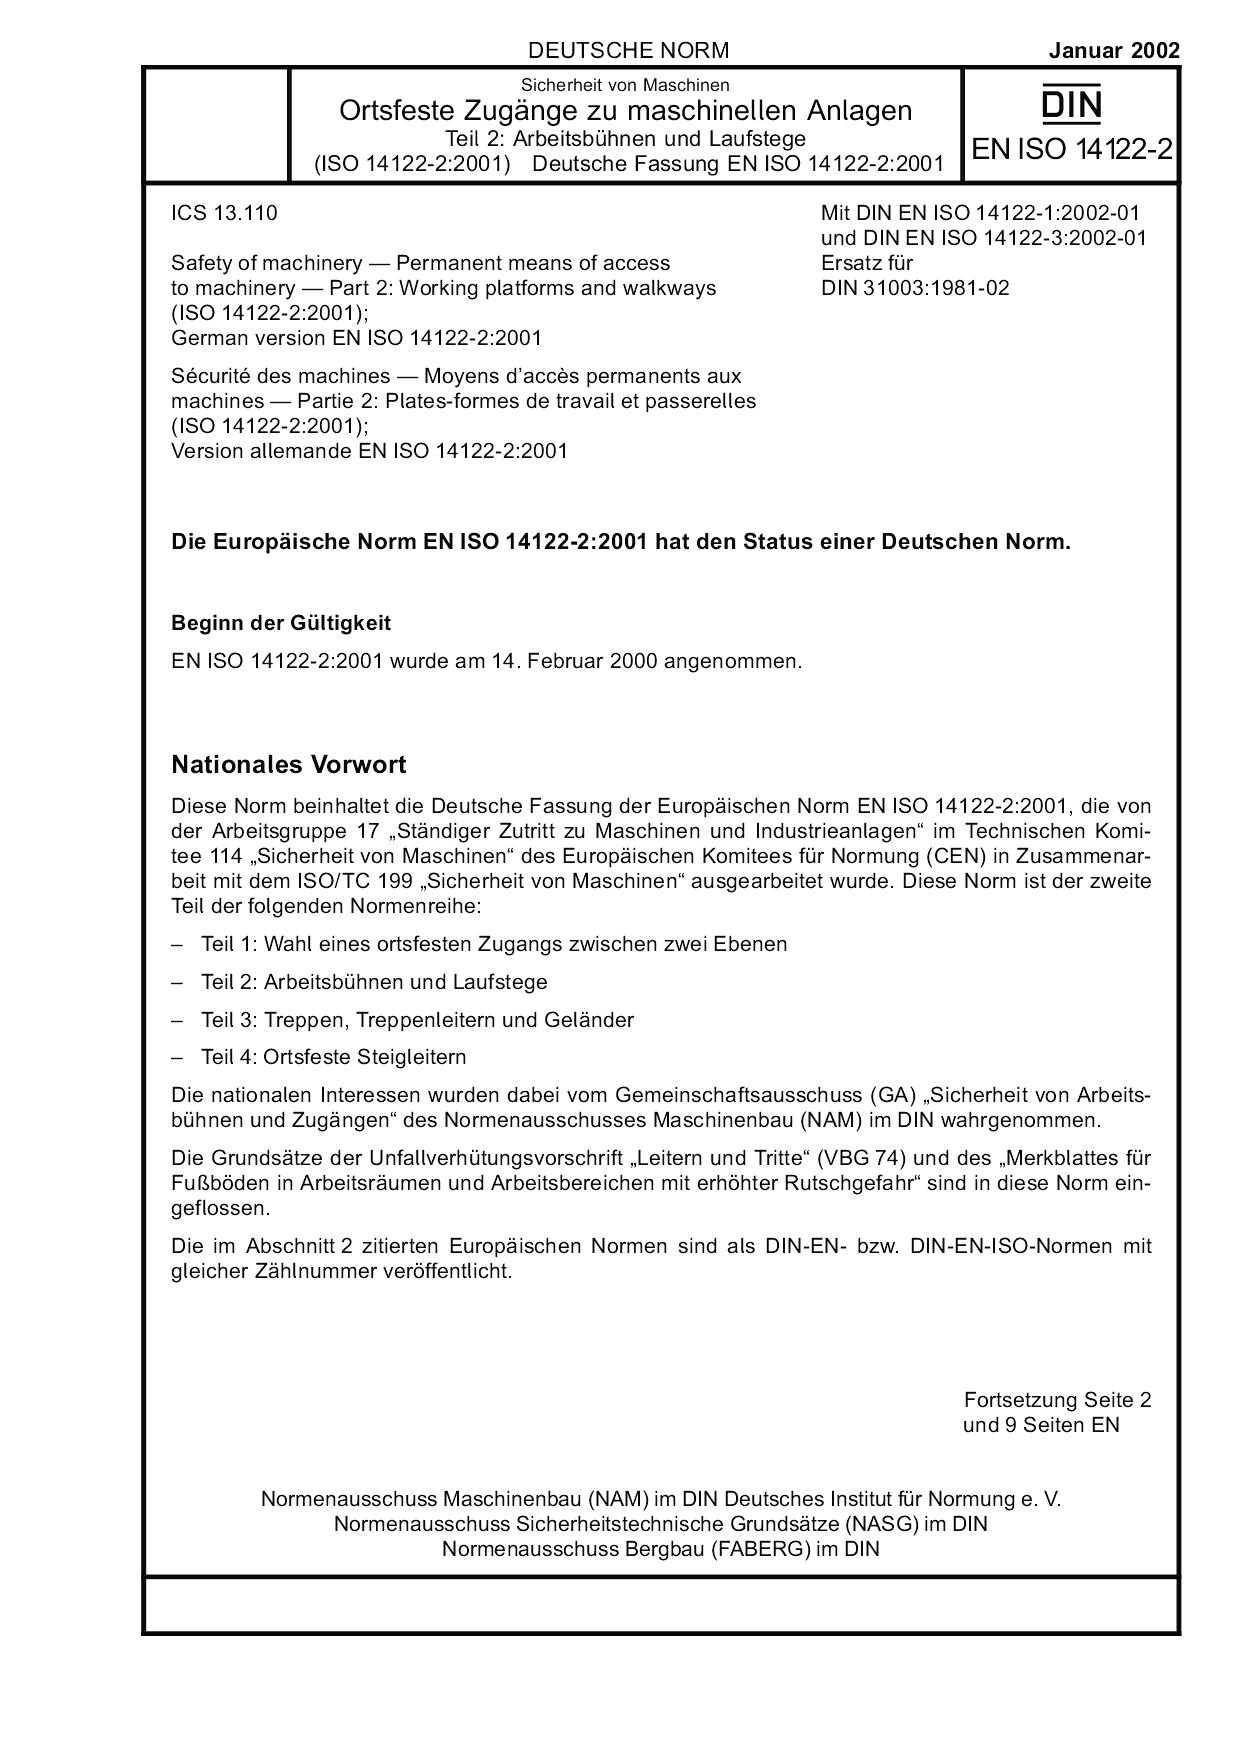 DIN EN ISO 14122-2:2002